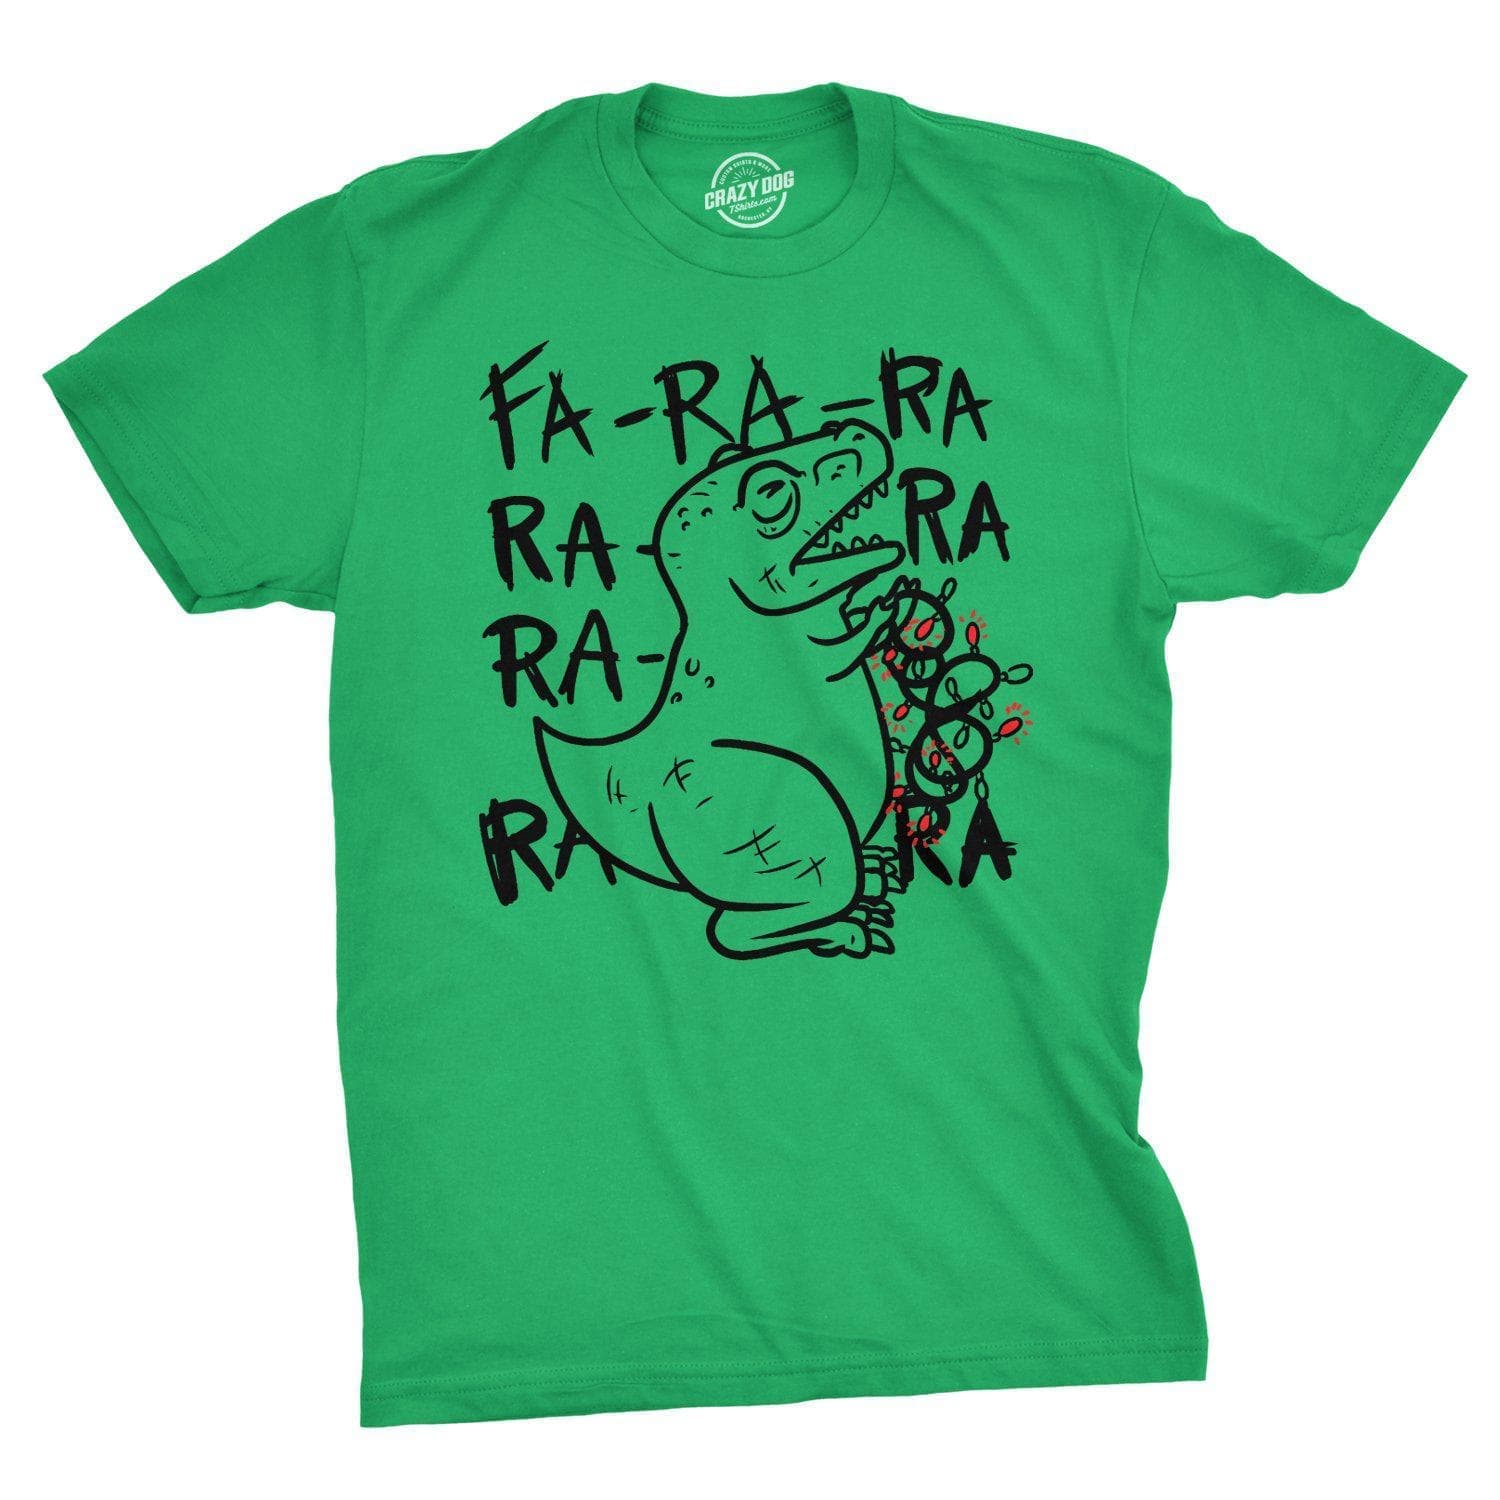 Fa Ra Ra Ra Ra T-Rex Men's Tshirt - Crazy Dog T-Shirts